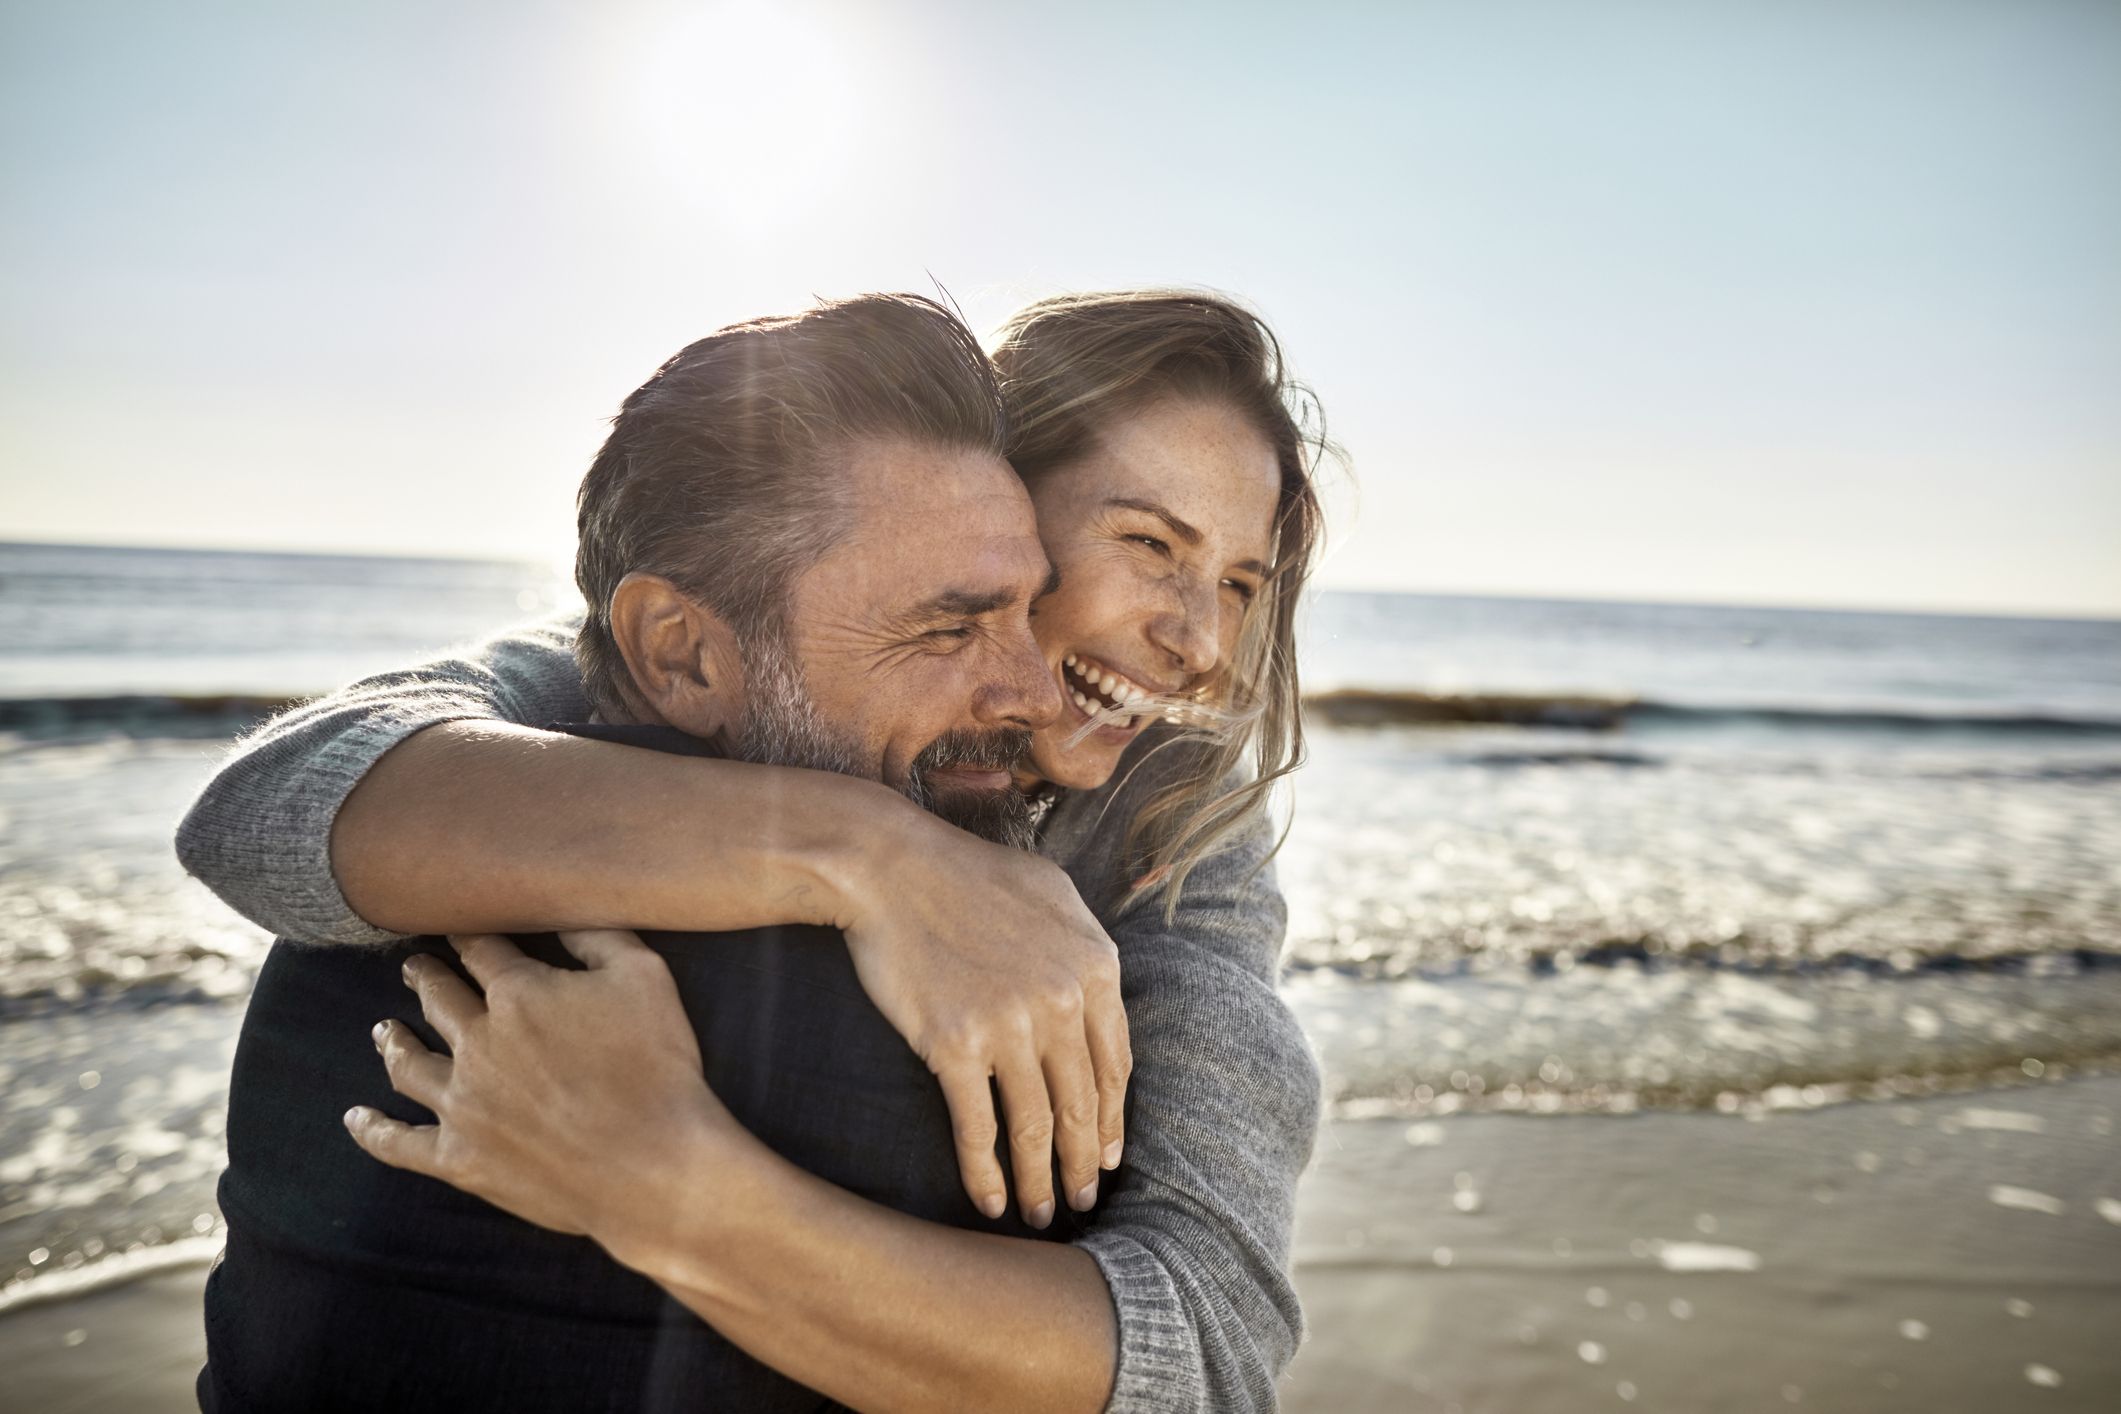 15 gestos de relaciones saludables de una pareja feliz